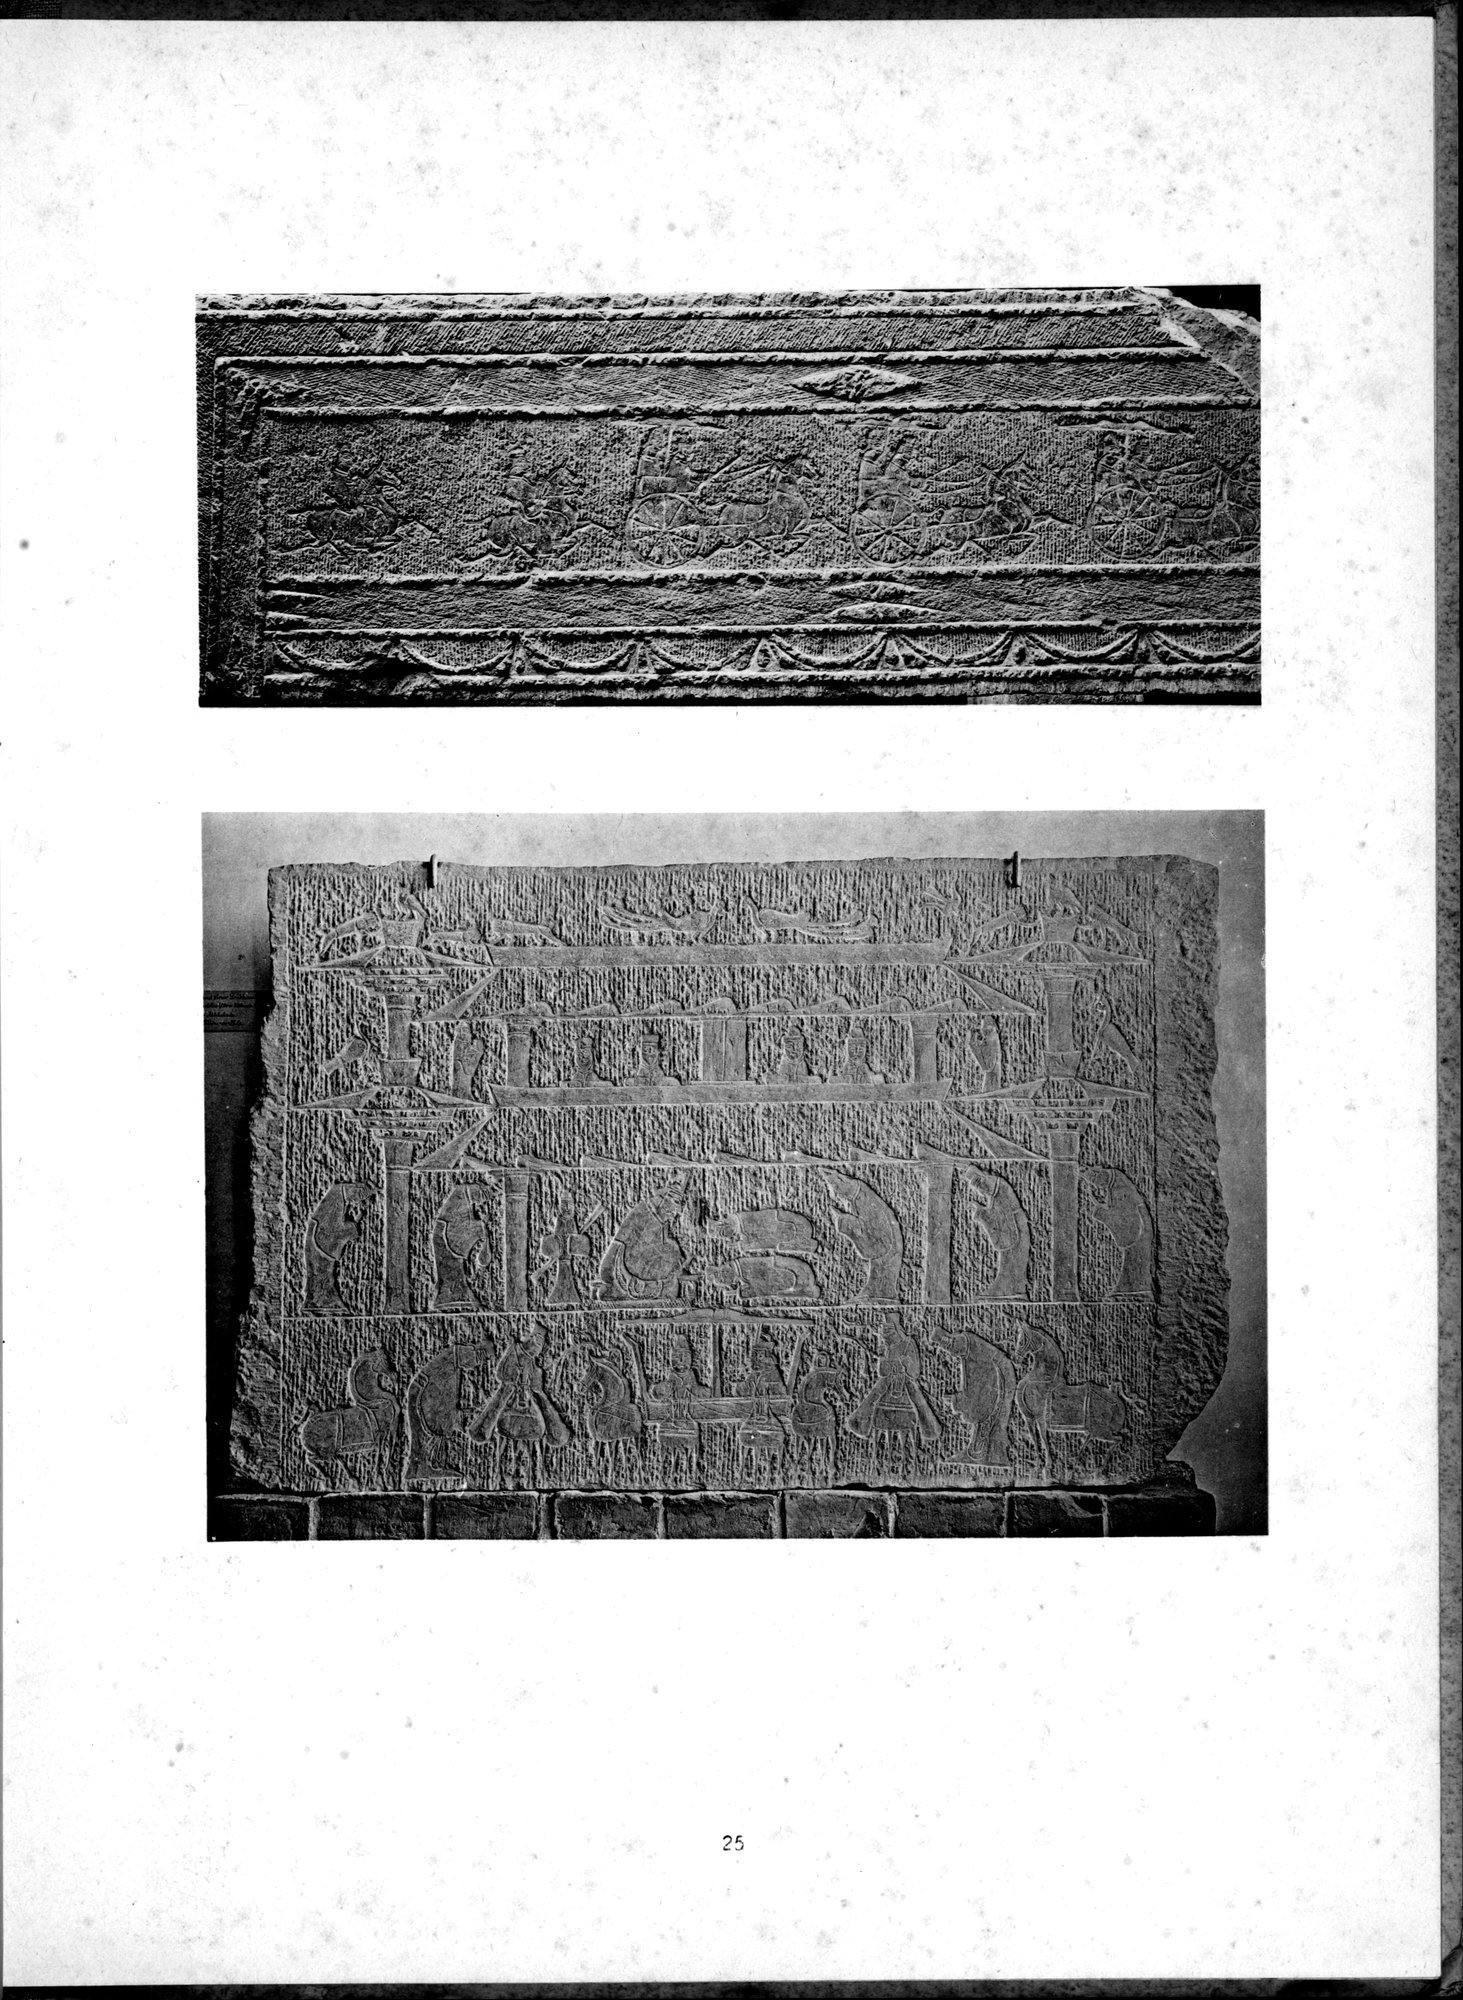 Die Chinesische Steinplastik : vol.1 / Page 29 (Grayscale High Resolution Image)